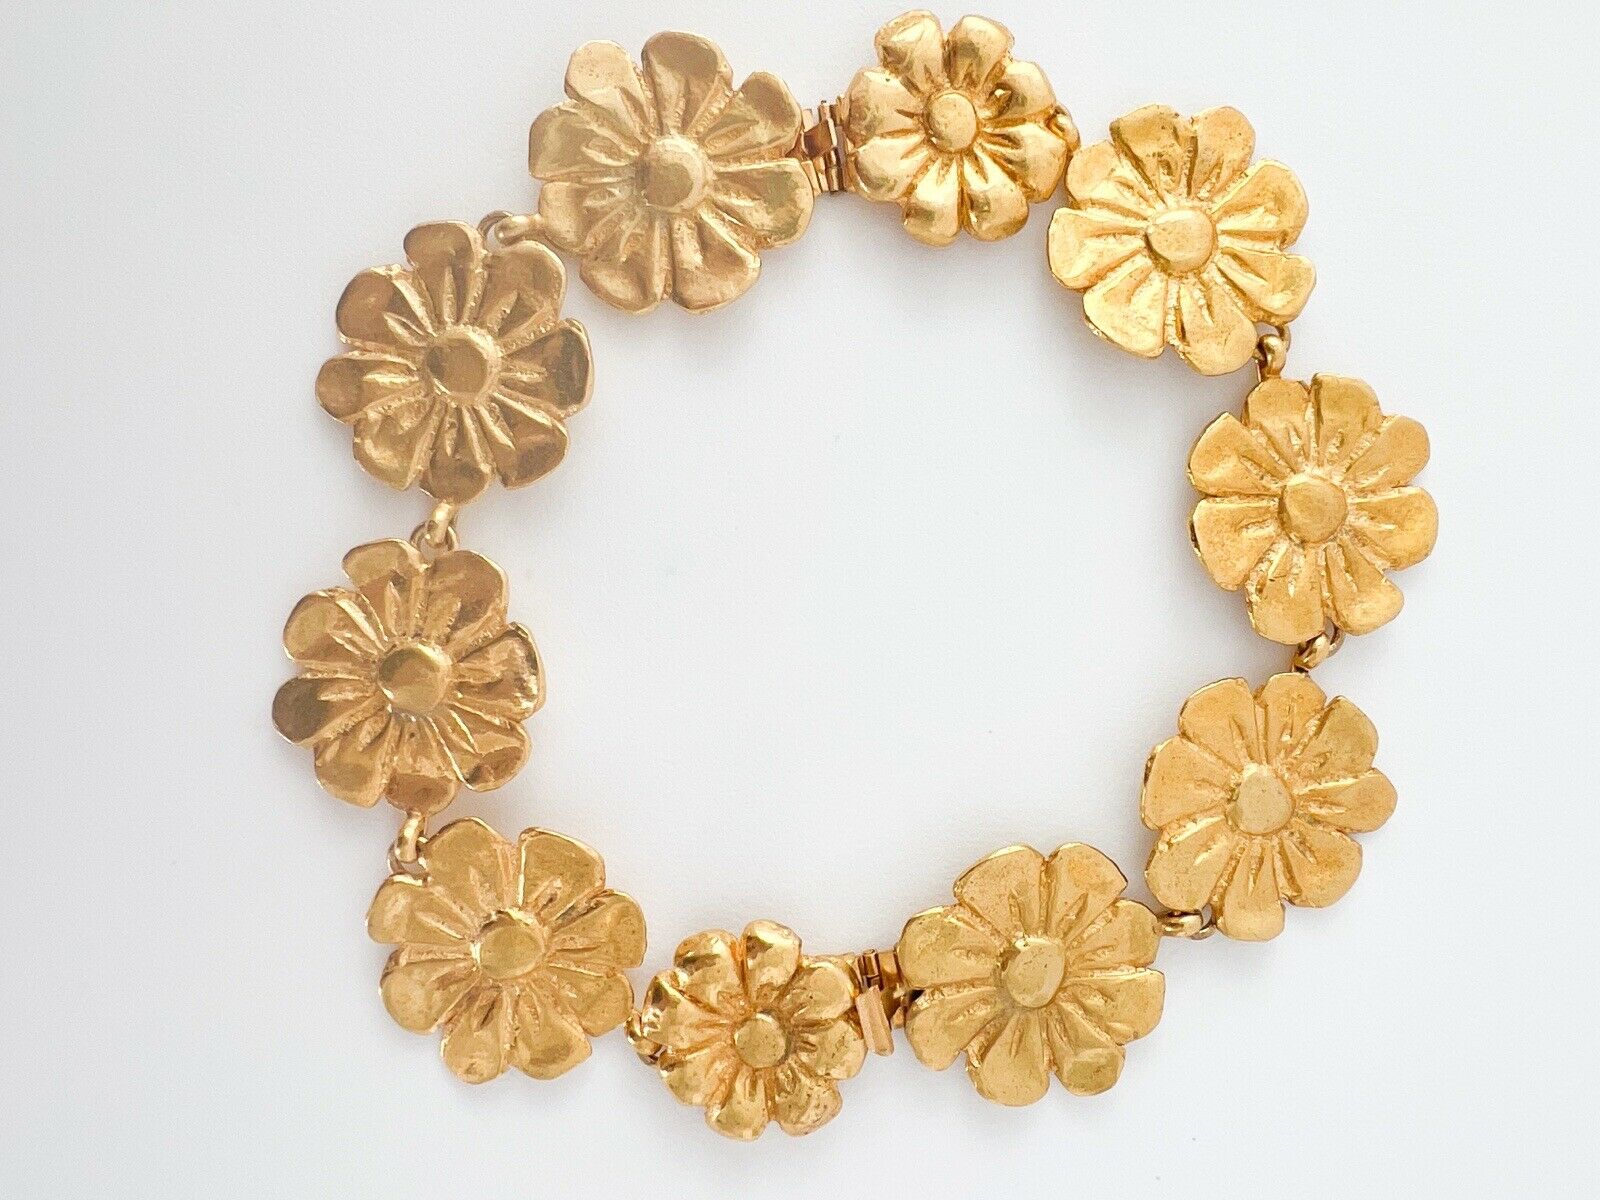 YSL Yves Saint Laurent Vintage Necklace Bracelet Floral Made in France